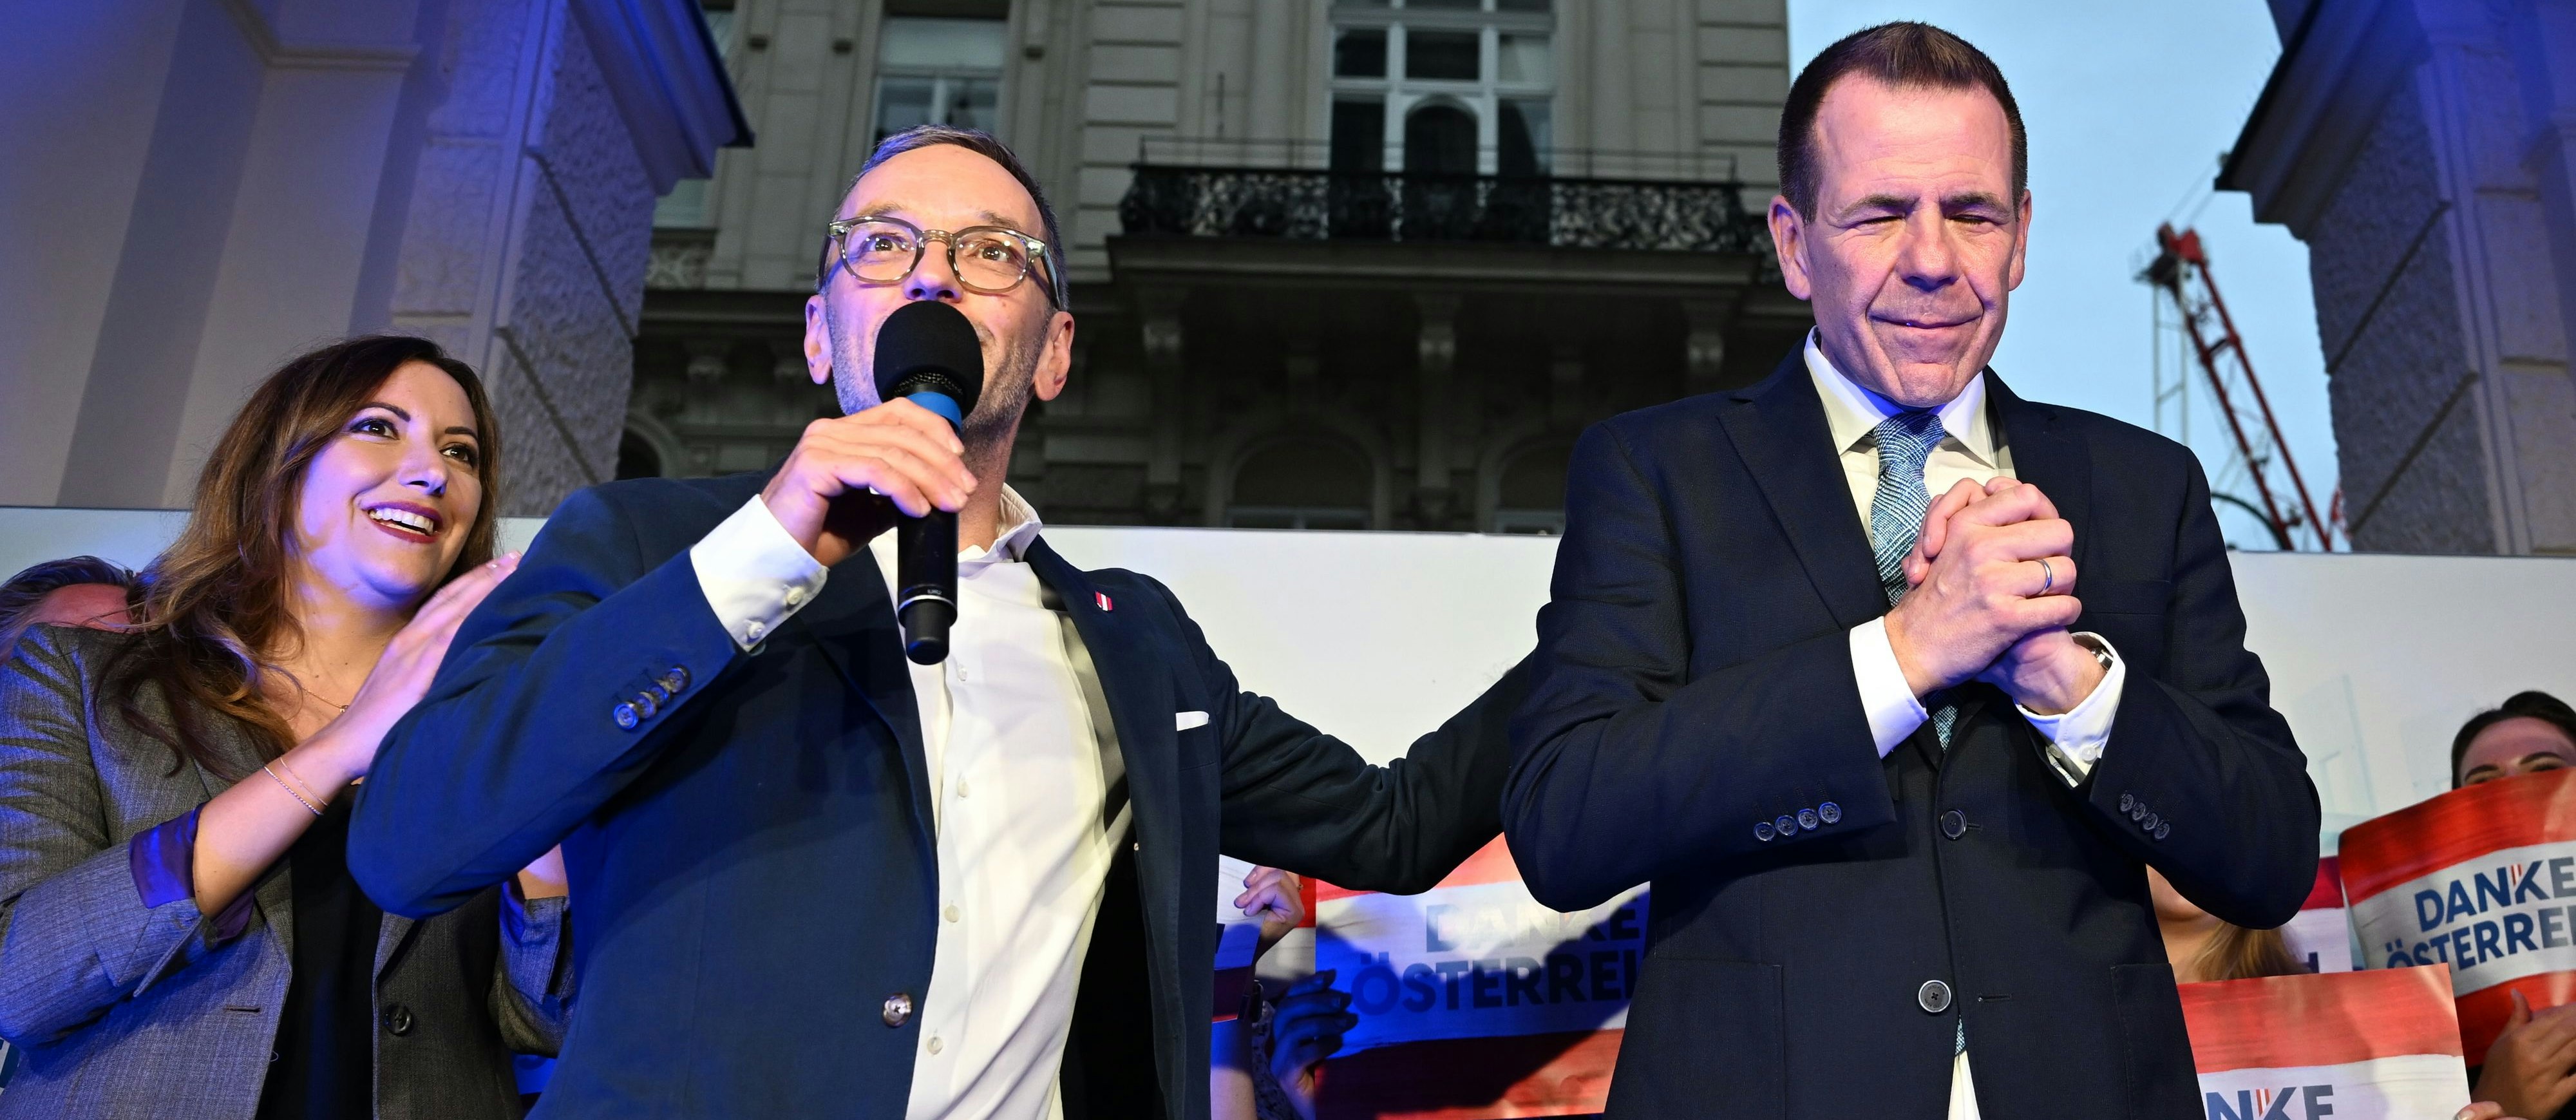 Sie wissen, was sie aneinander haben: FPÖ-Bundesparteiobmann Herbert Kickl und Spitzenkandidat Harald Vilimsky